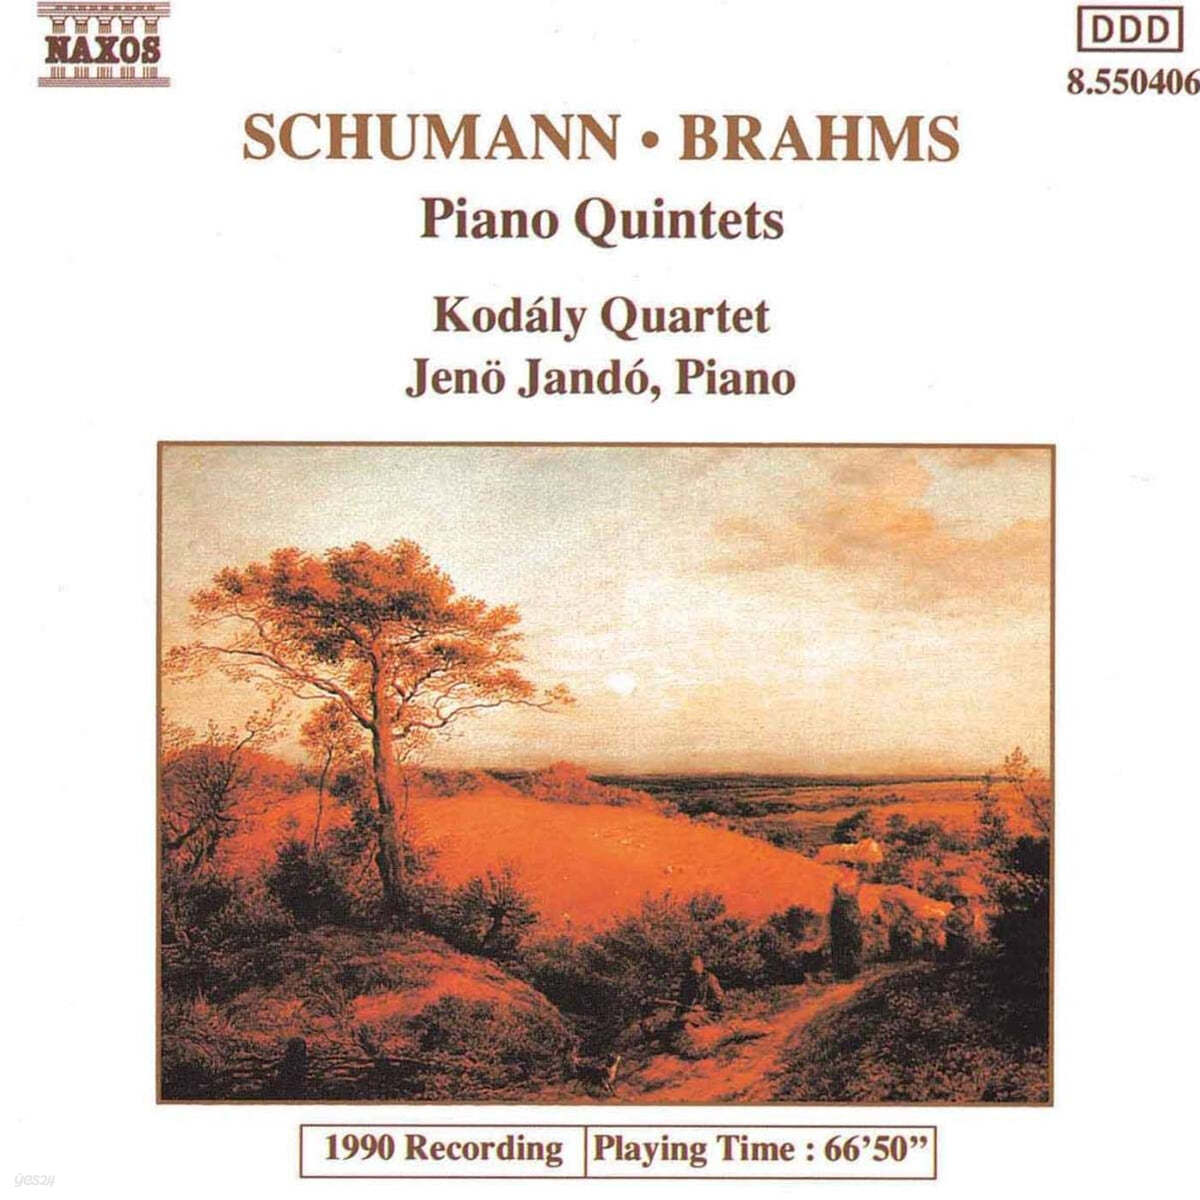 Jeno Jando 슈만 / 브람스: 현악 오중주 - 코다이 사중주단, 예뇌 얀도 (Schumann: Quintet Op.44 / Brahms: Quintet Op.34) 